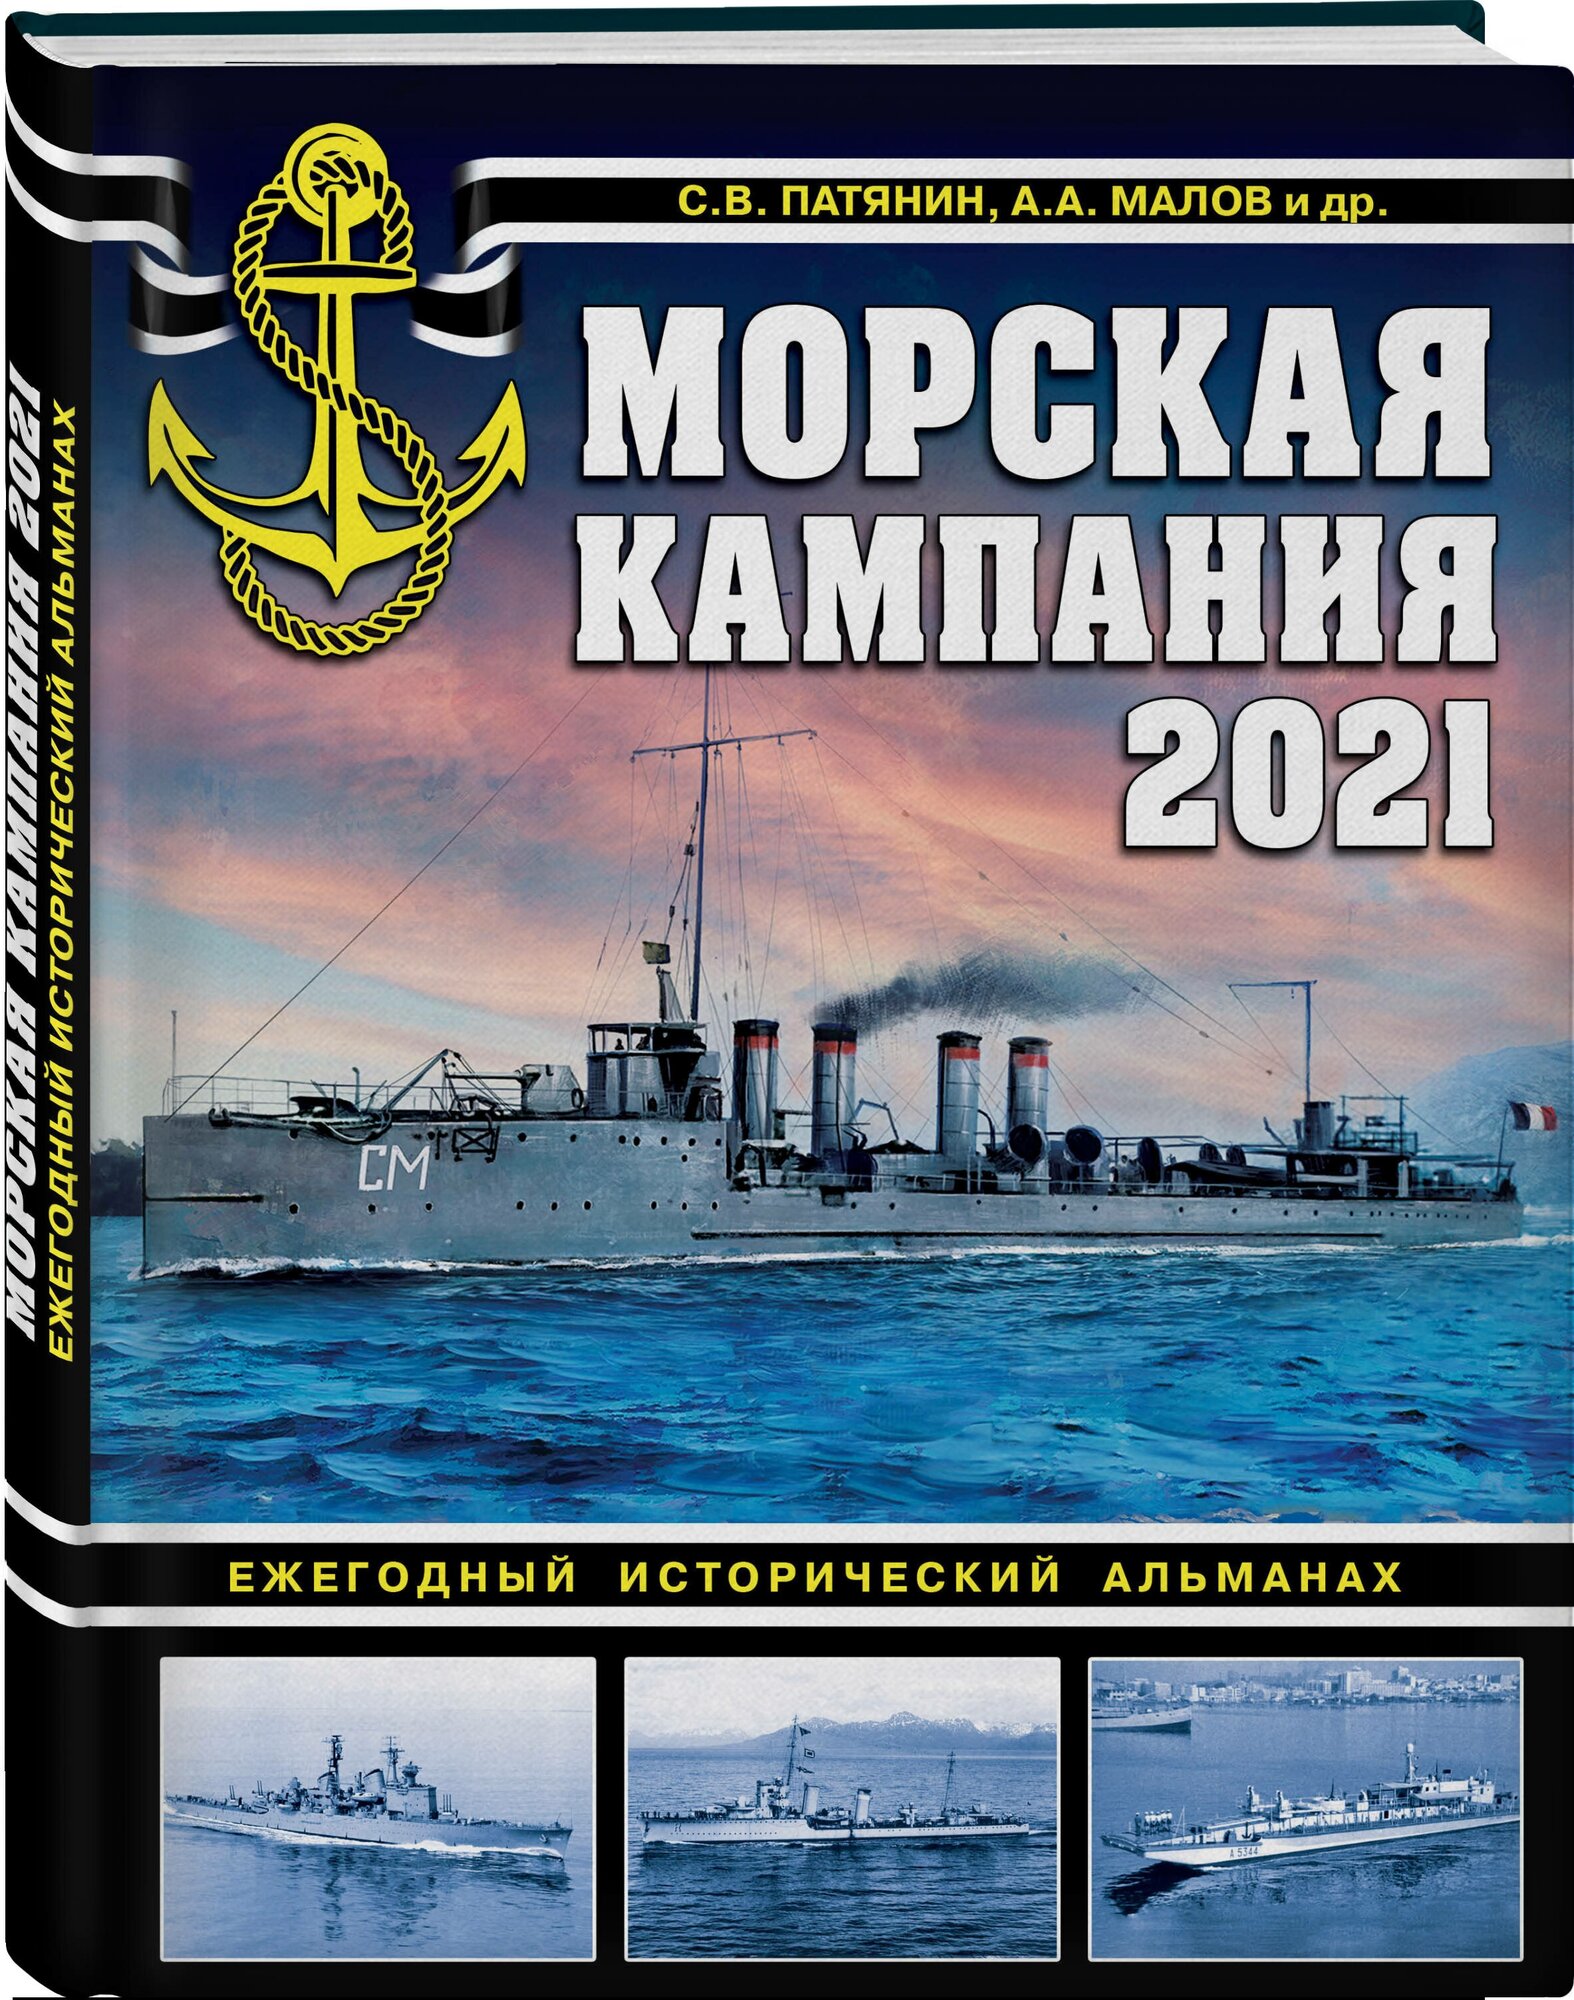 Морская кампания 2021. Ежегодный исторический альманах - фото №1